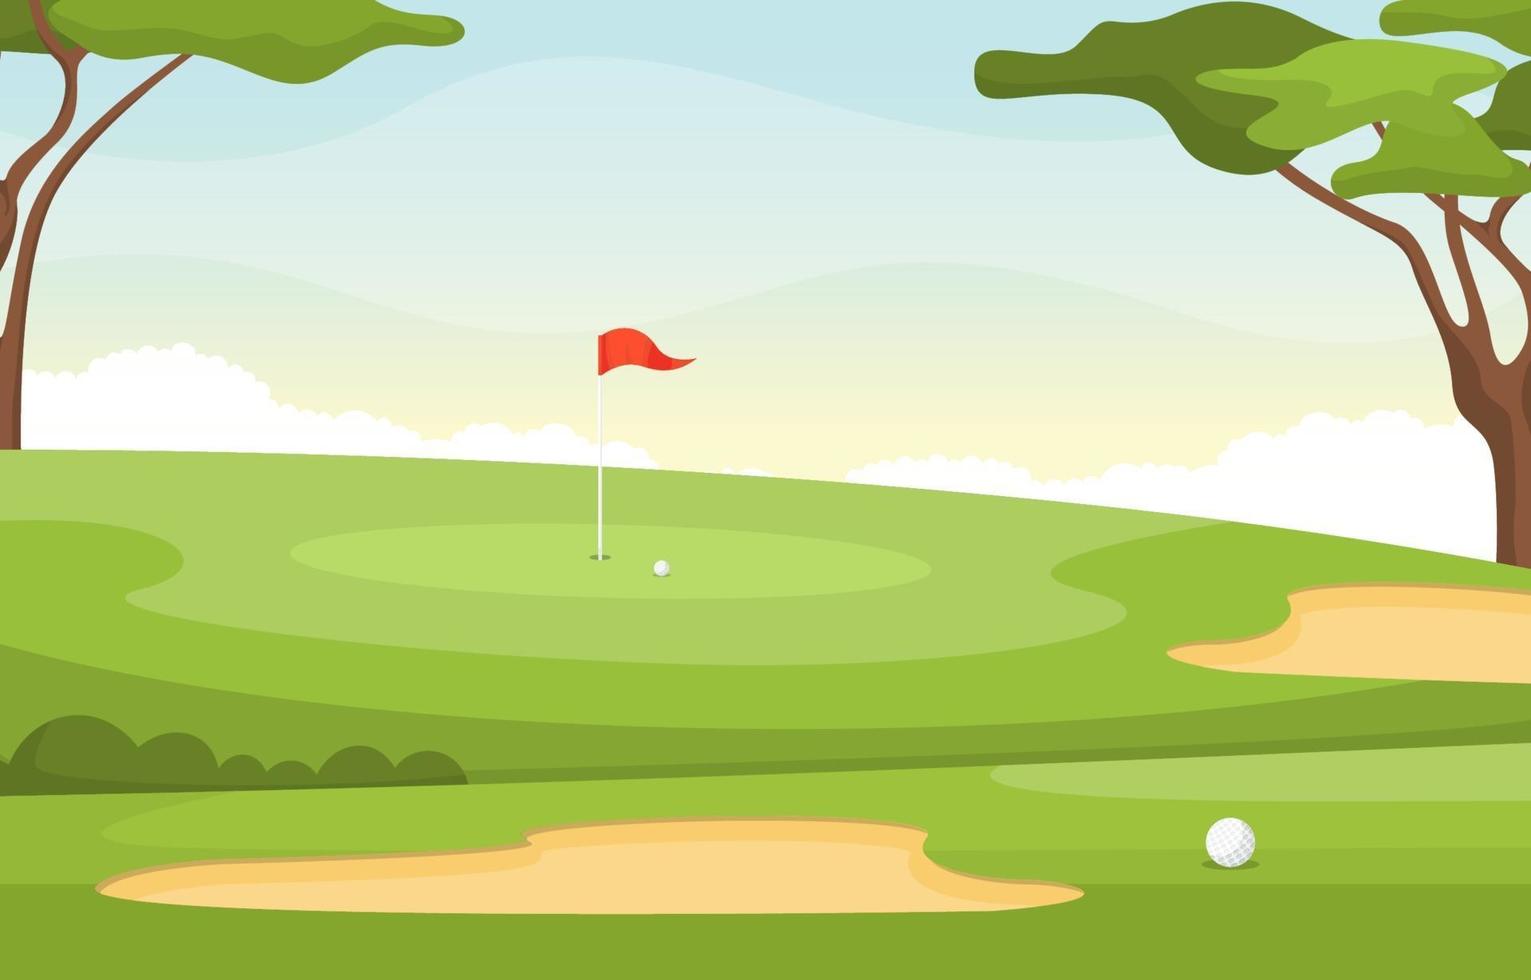 terrain de golf avec drapeau rouge, arbres, pièges à sable et balle de golf vecteur